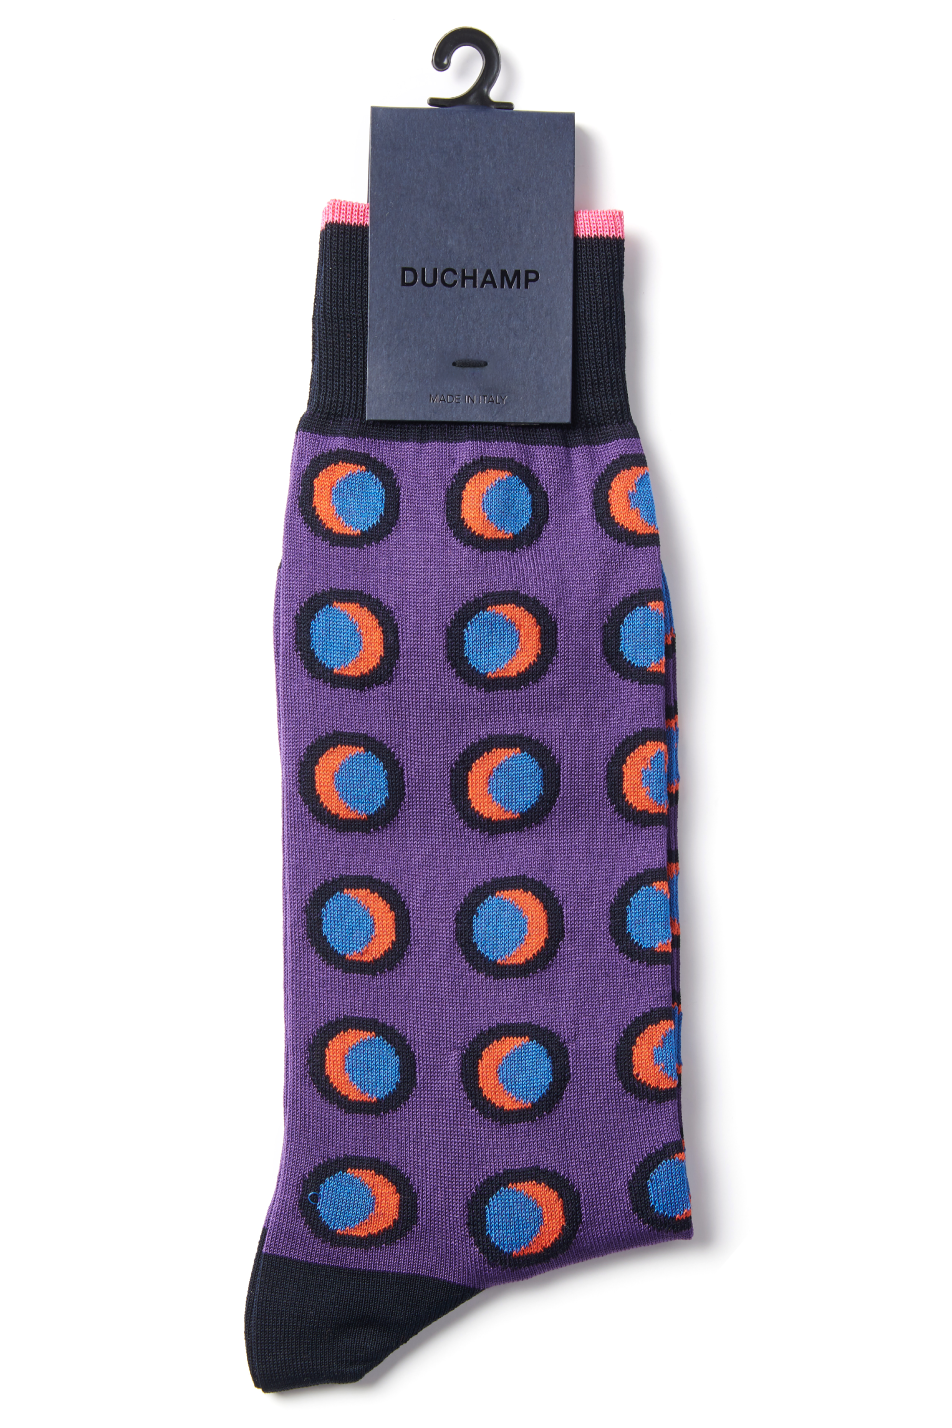 Duchamp Men's Disc Sock